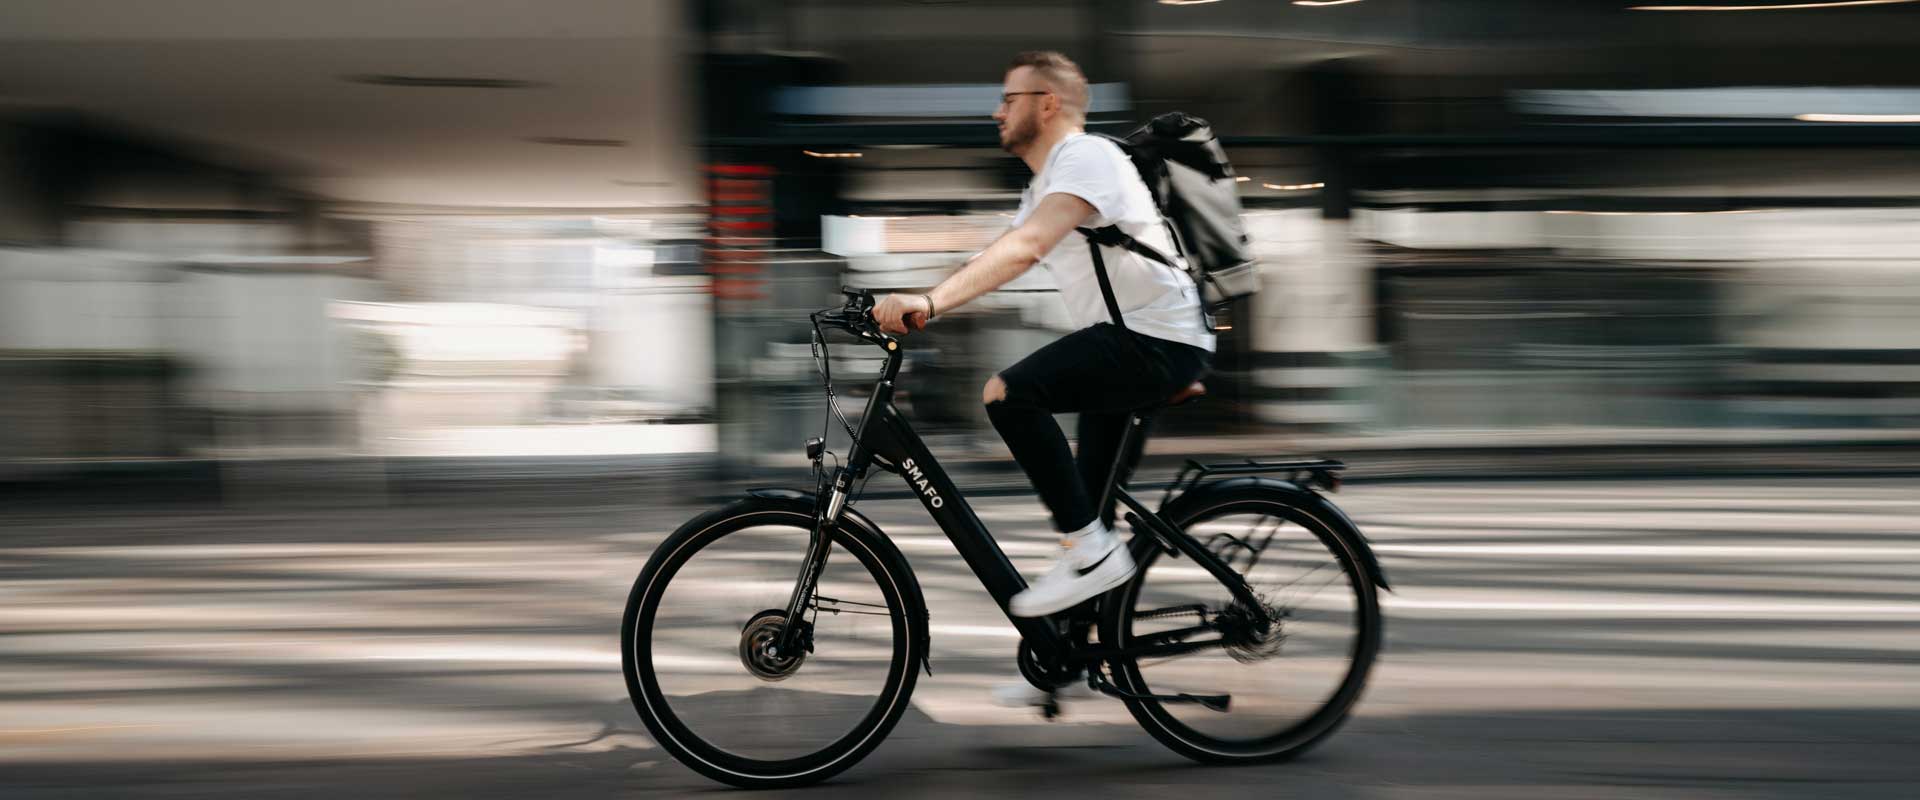 Motiv eines Radfahrers zur Marktforschungsstudie über ein Fahrradschloss, das sich mittels Smartphone App öffnen lässt